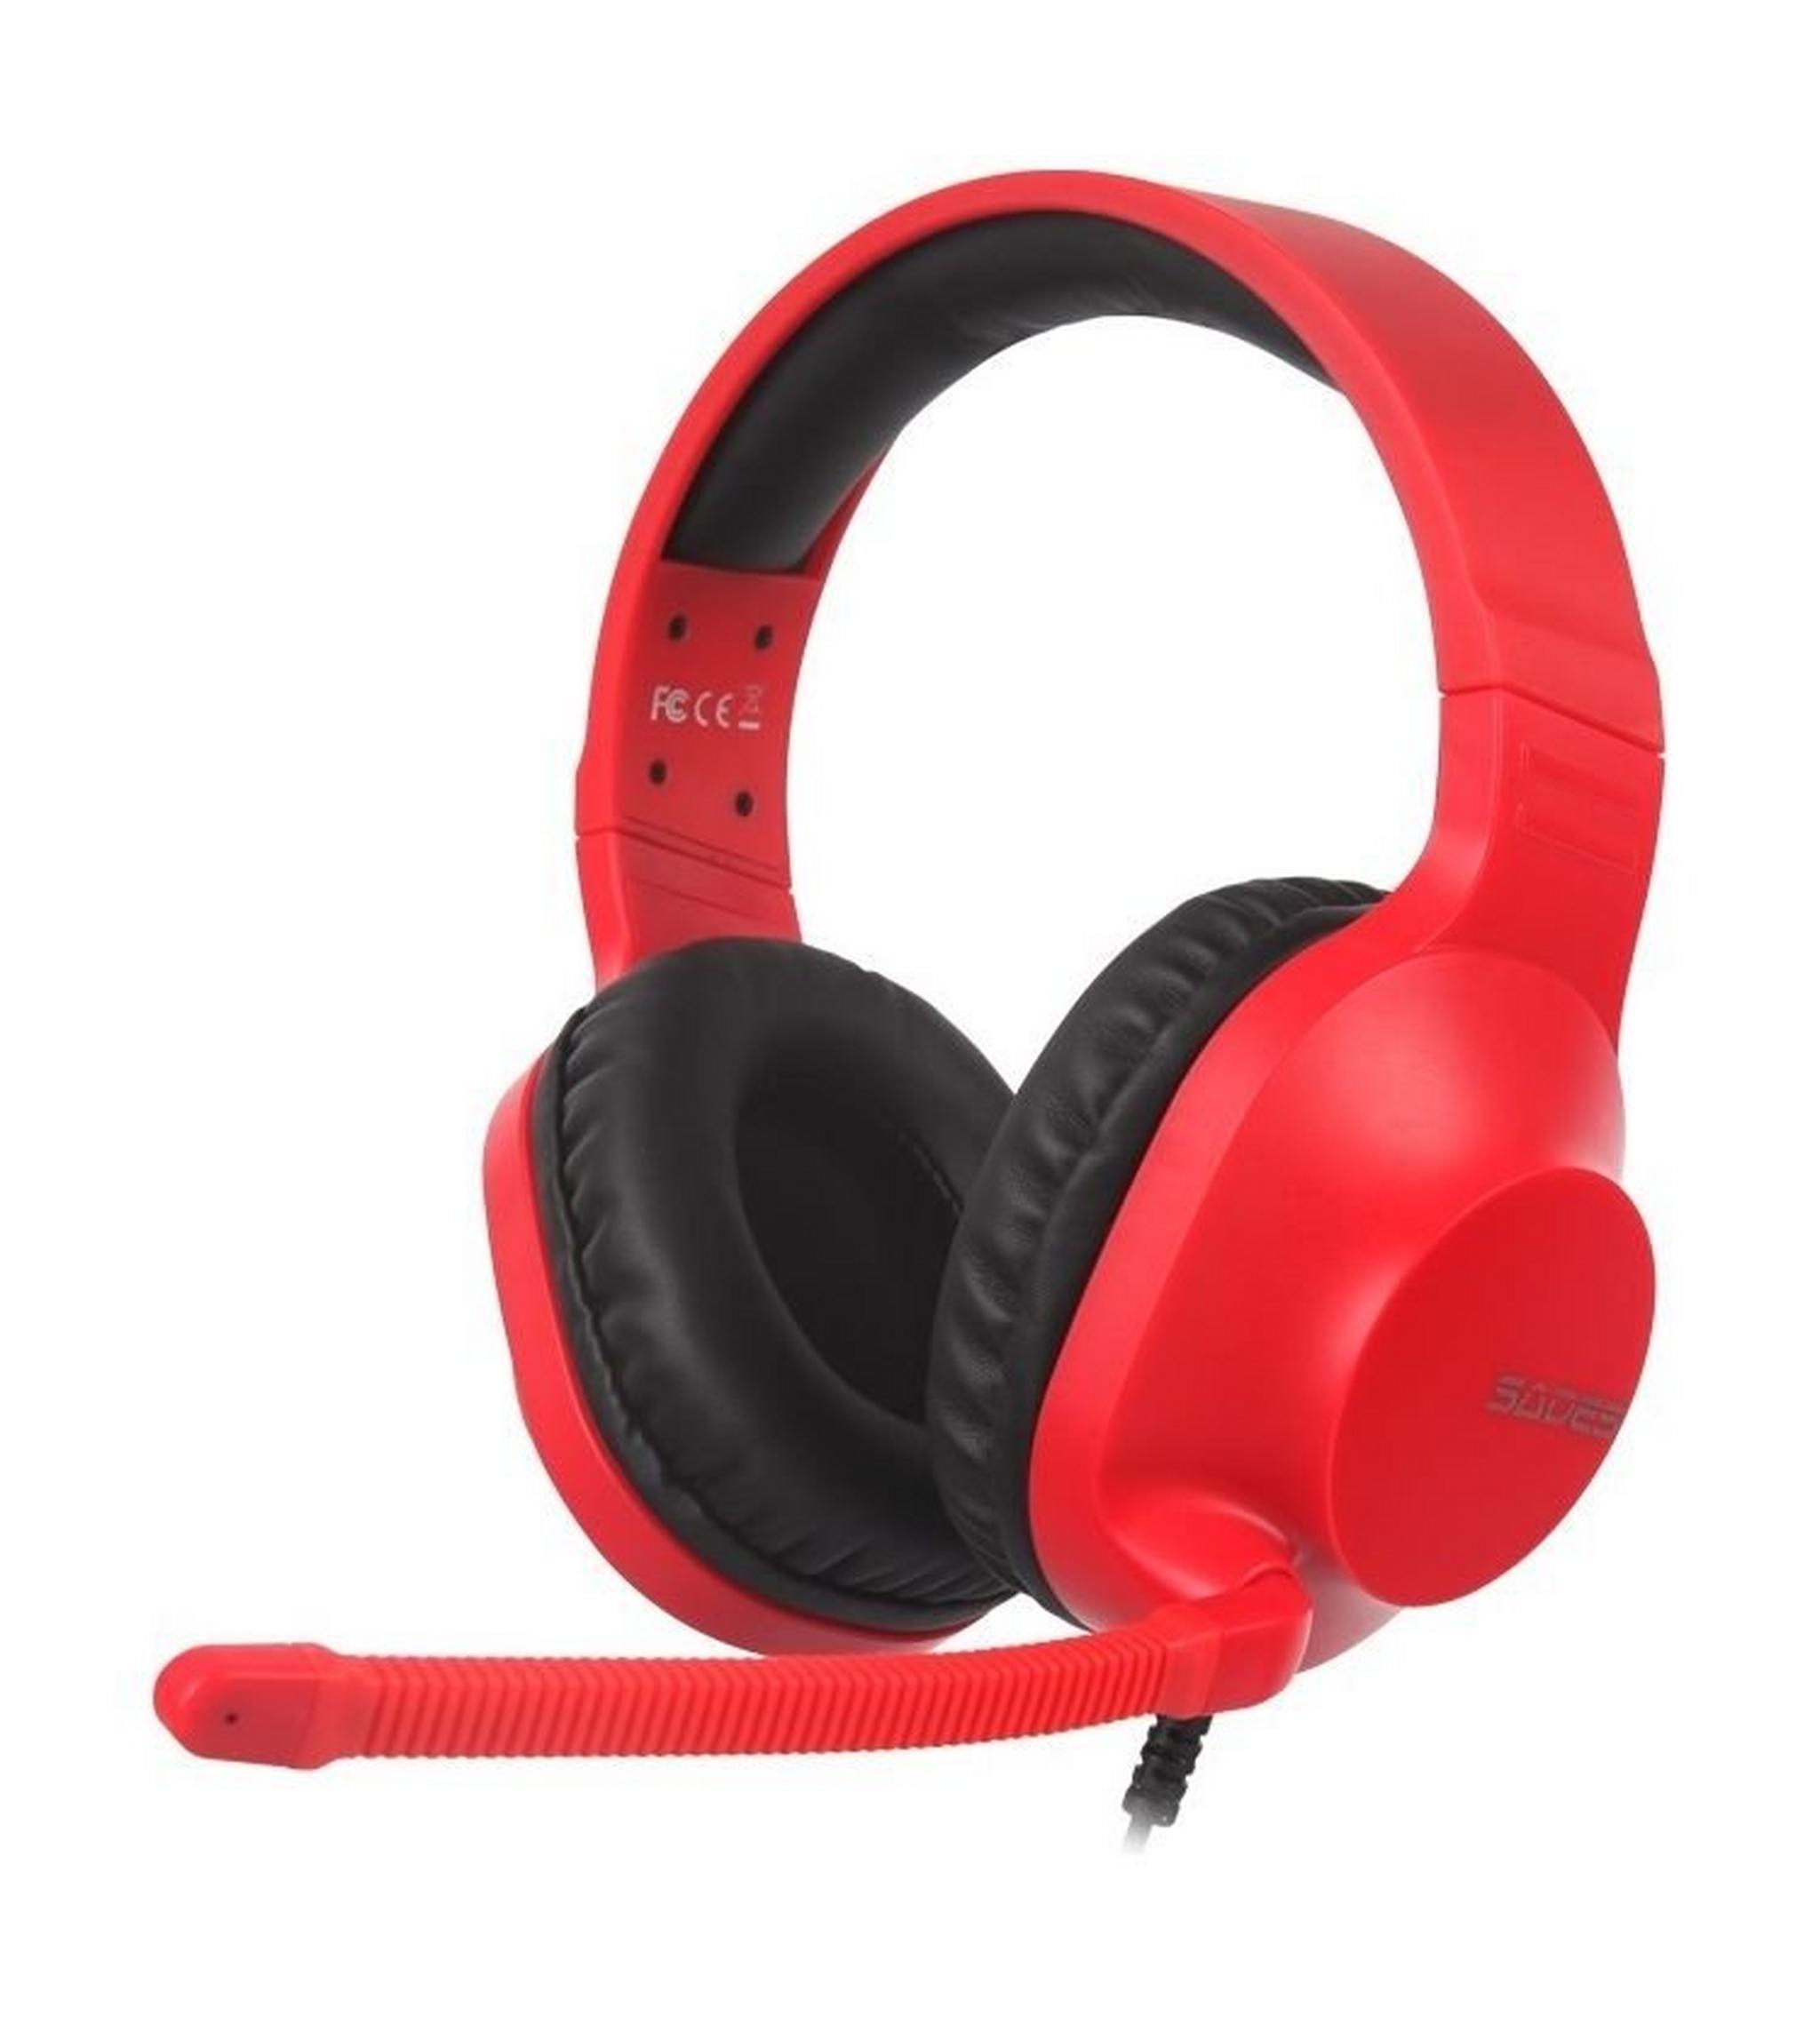 Sades Spirits Wired Gaming Headset - Red